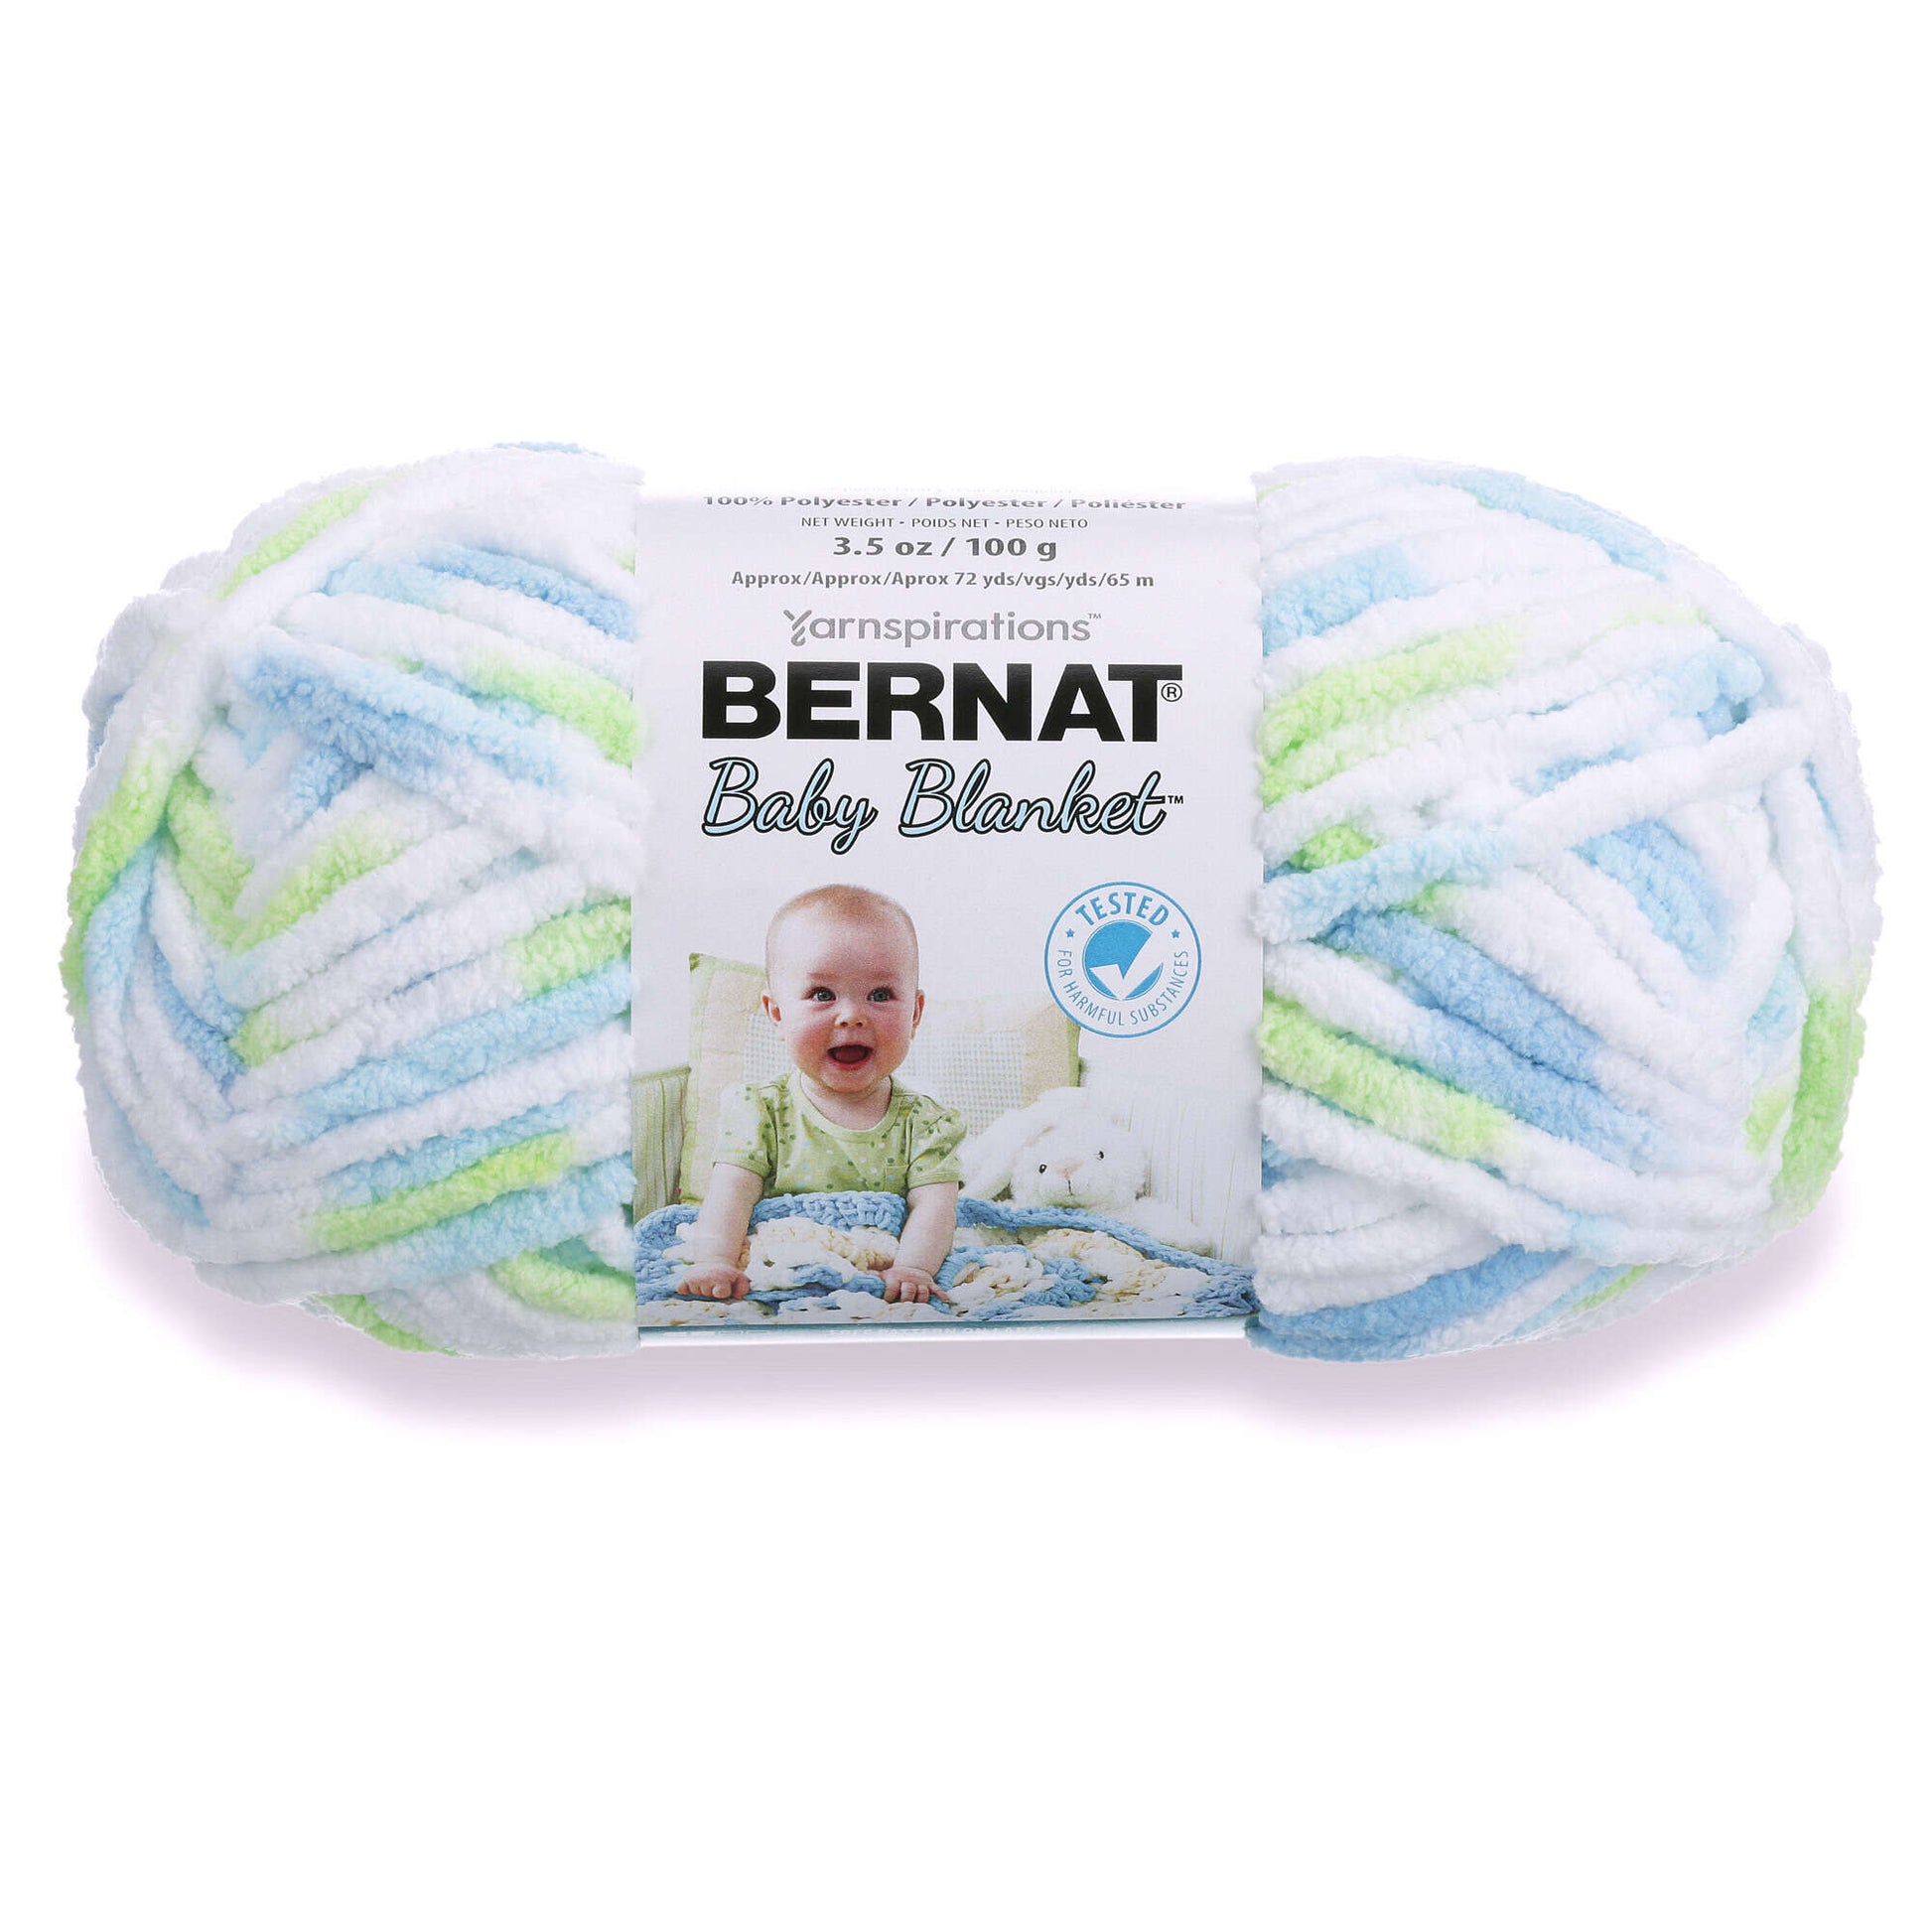 LITTLE ROSES Bernat Baby Blanket COLOR 04418 10.5 Oz258 Yards